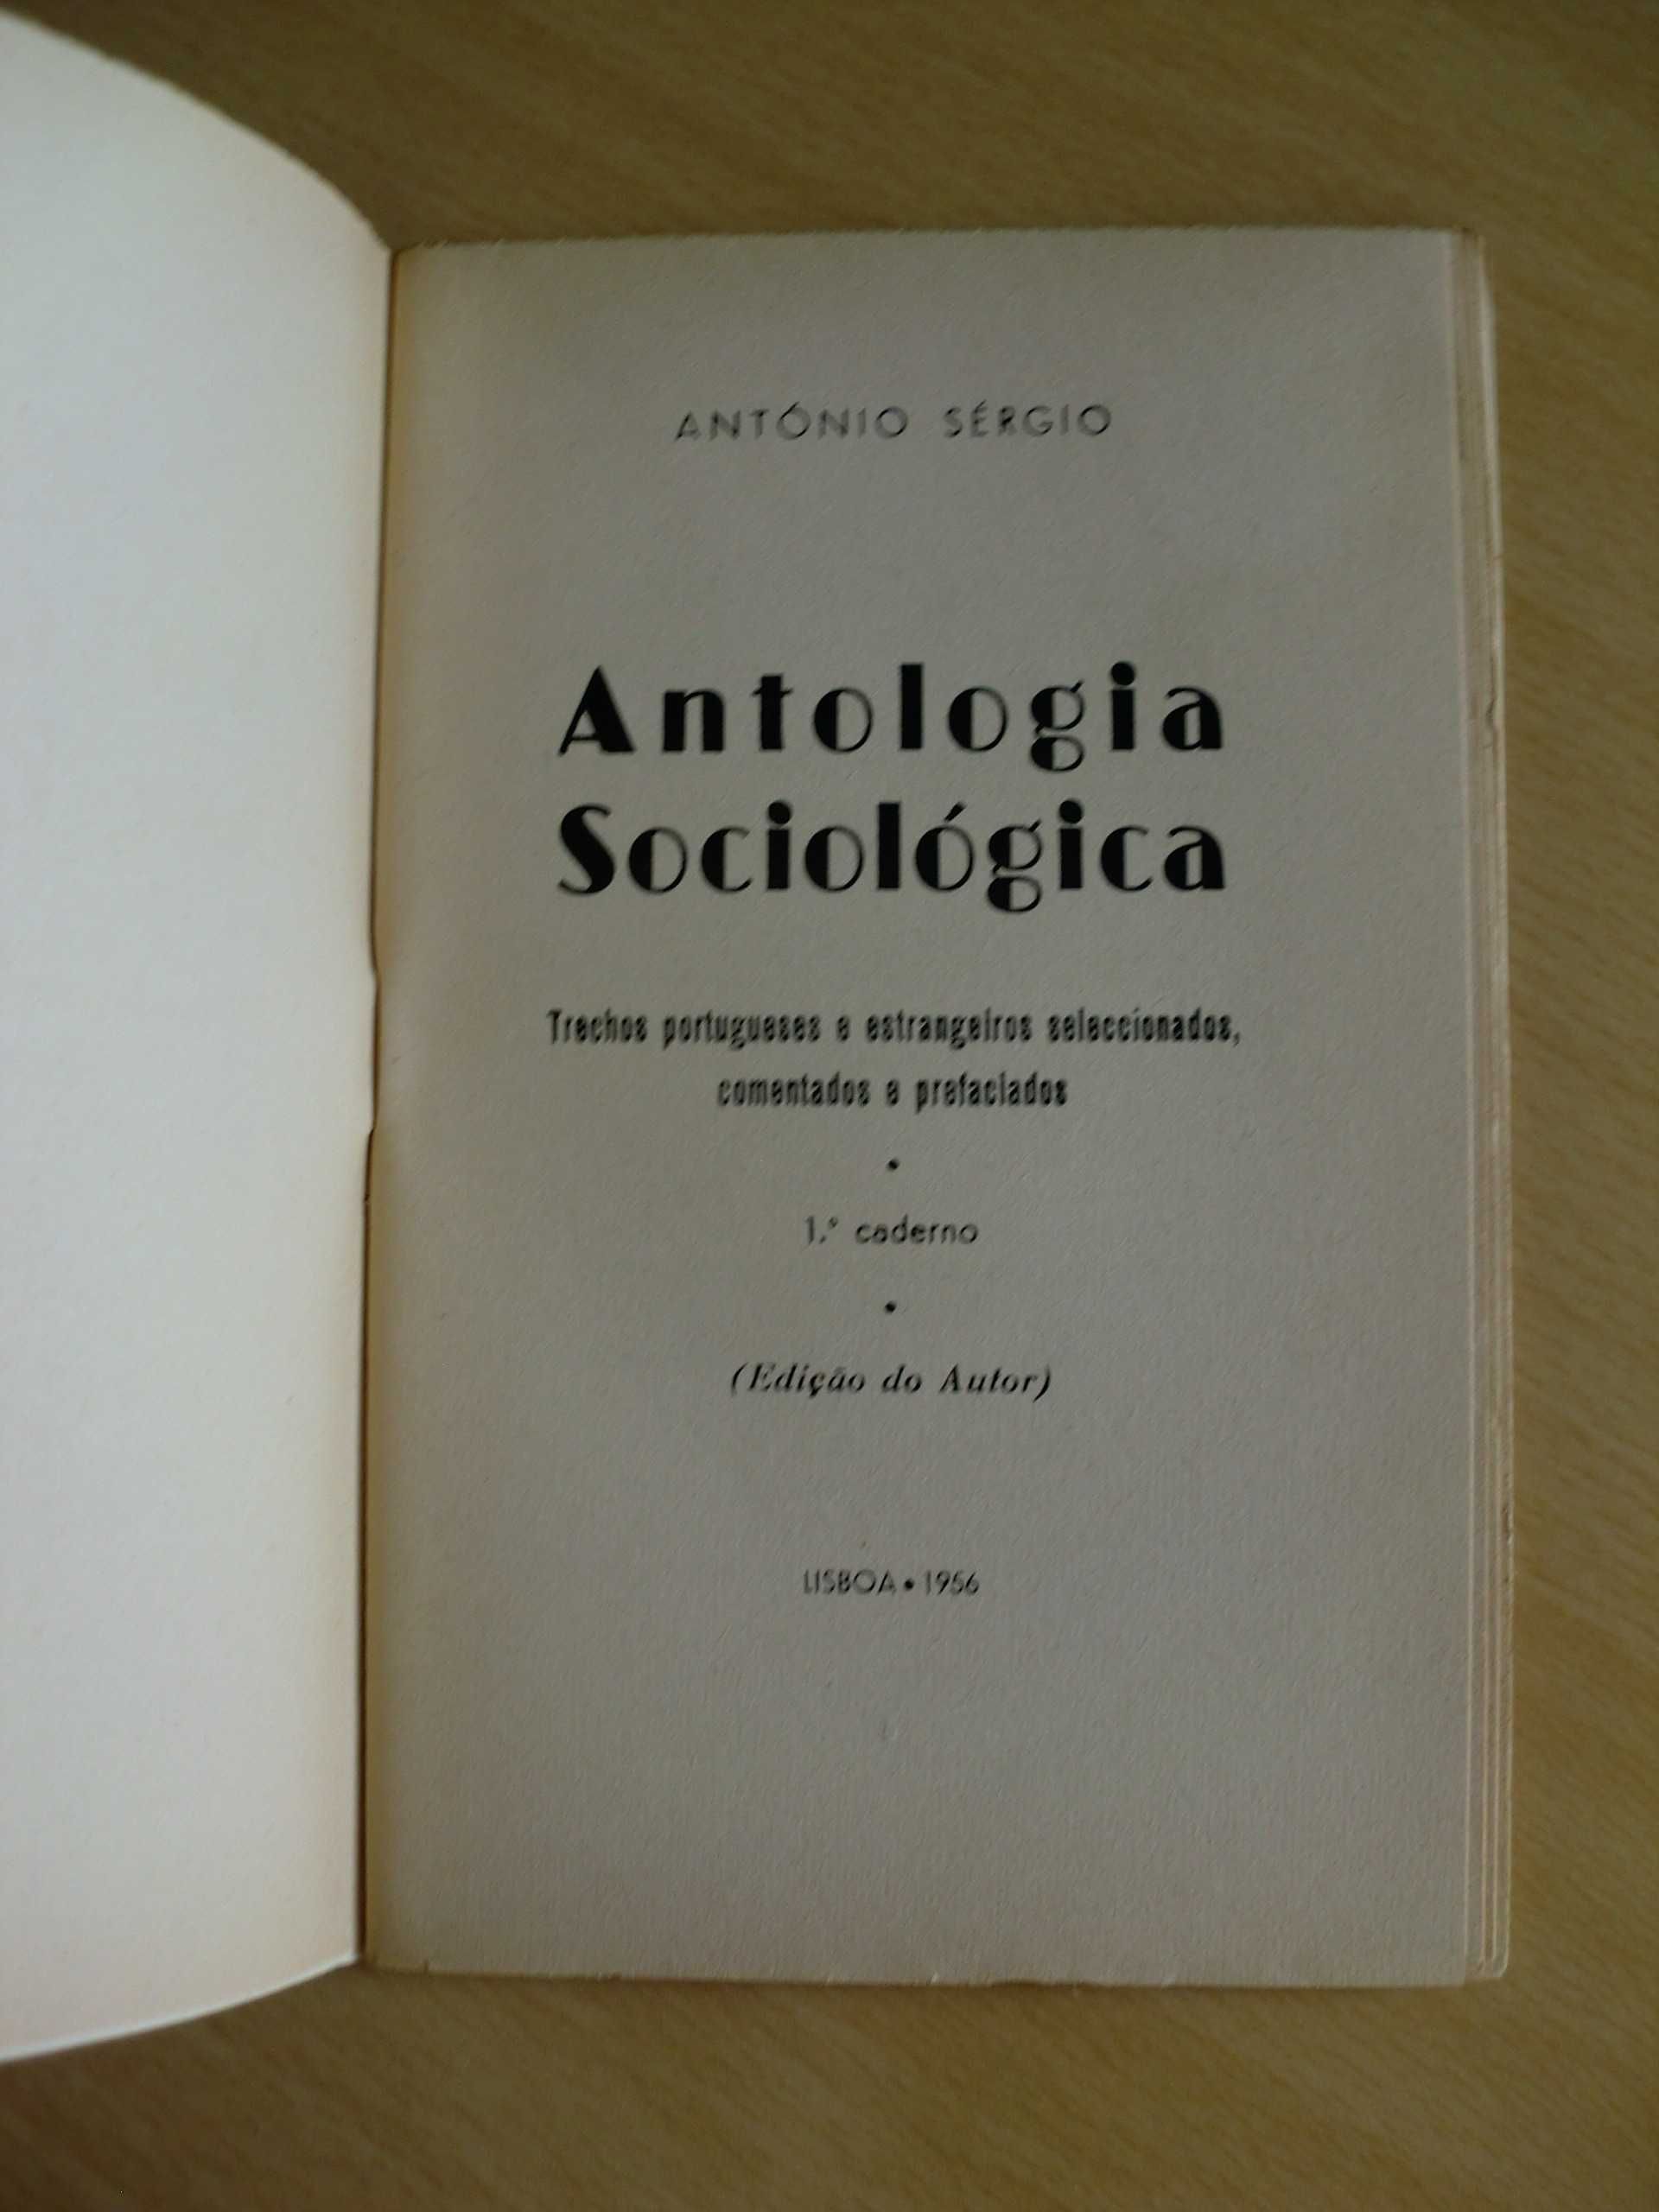 Antologia Sociológica 
de António Sérgio